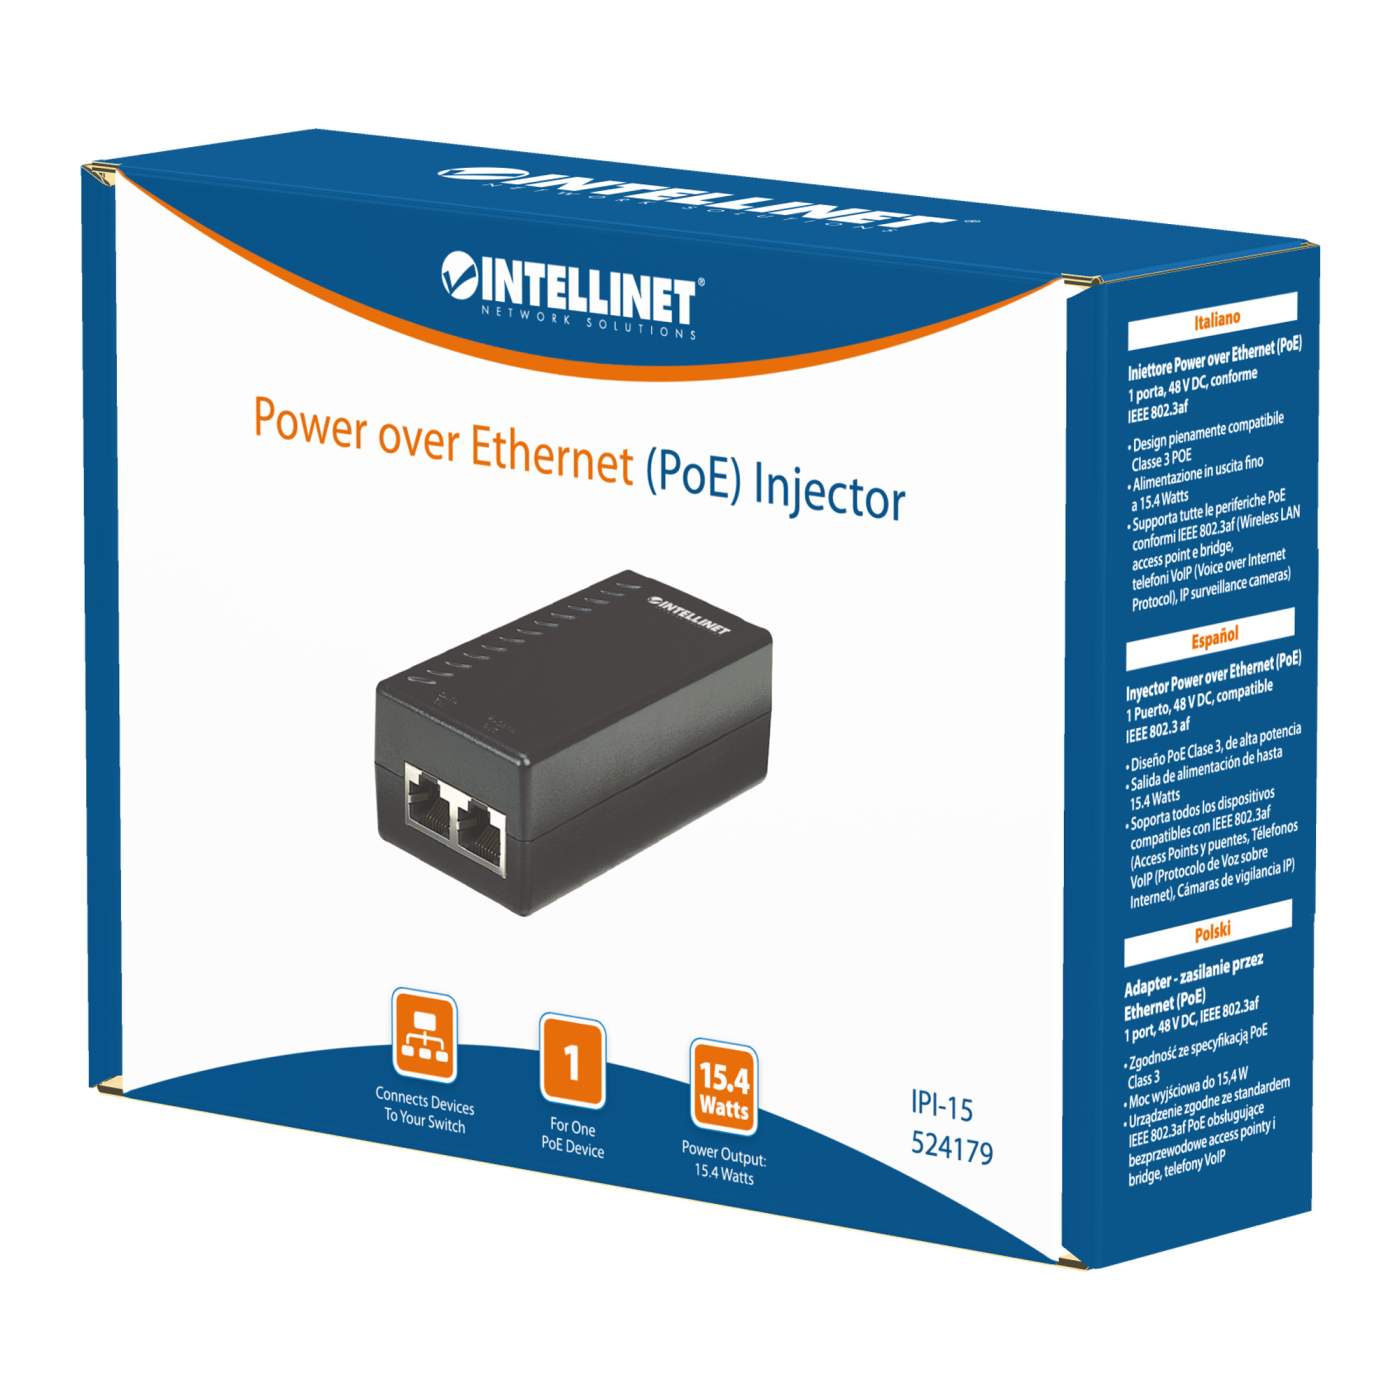 Power over Ethernet (PoE-) Injektor